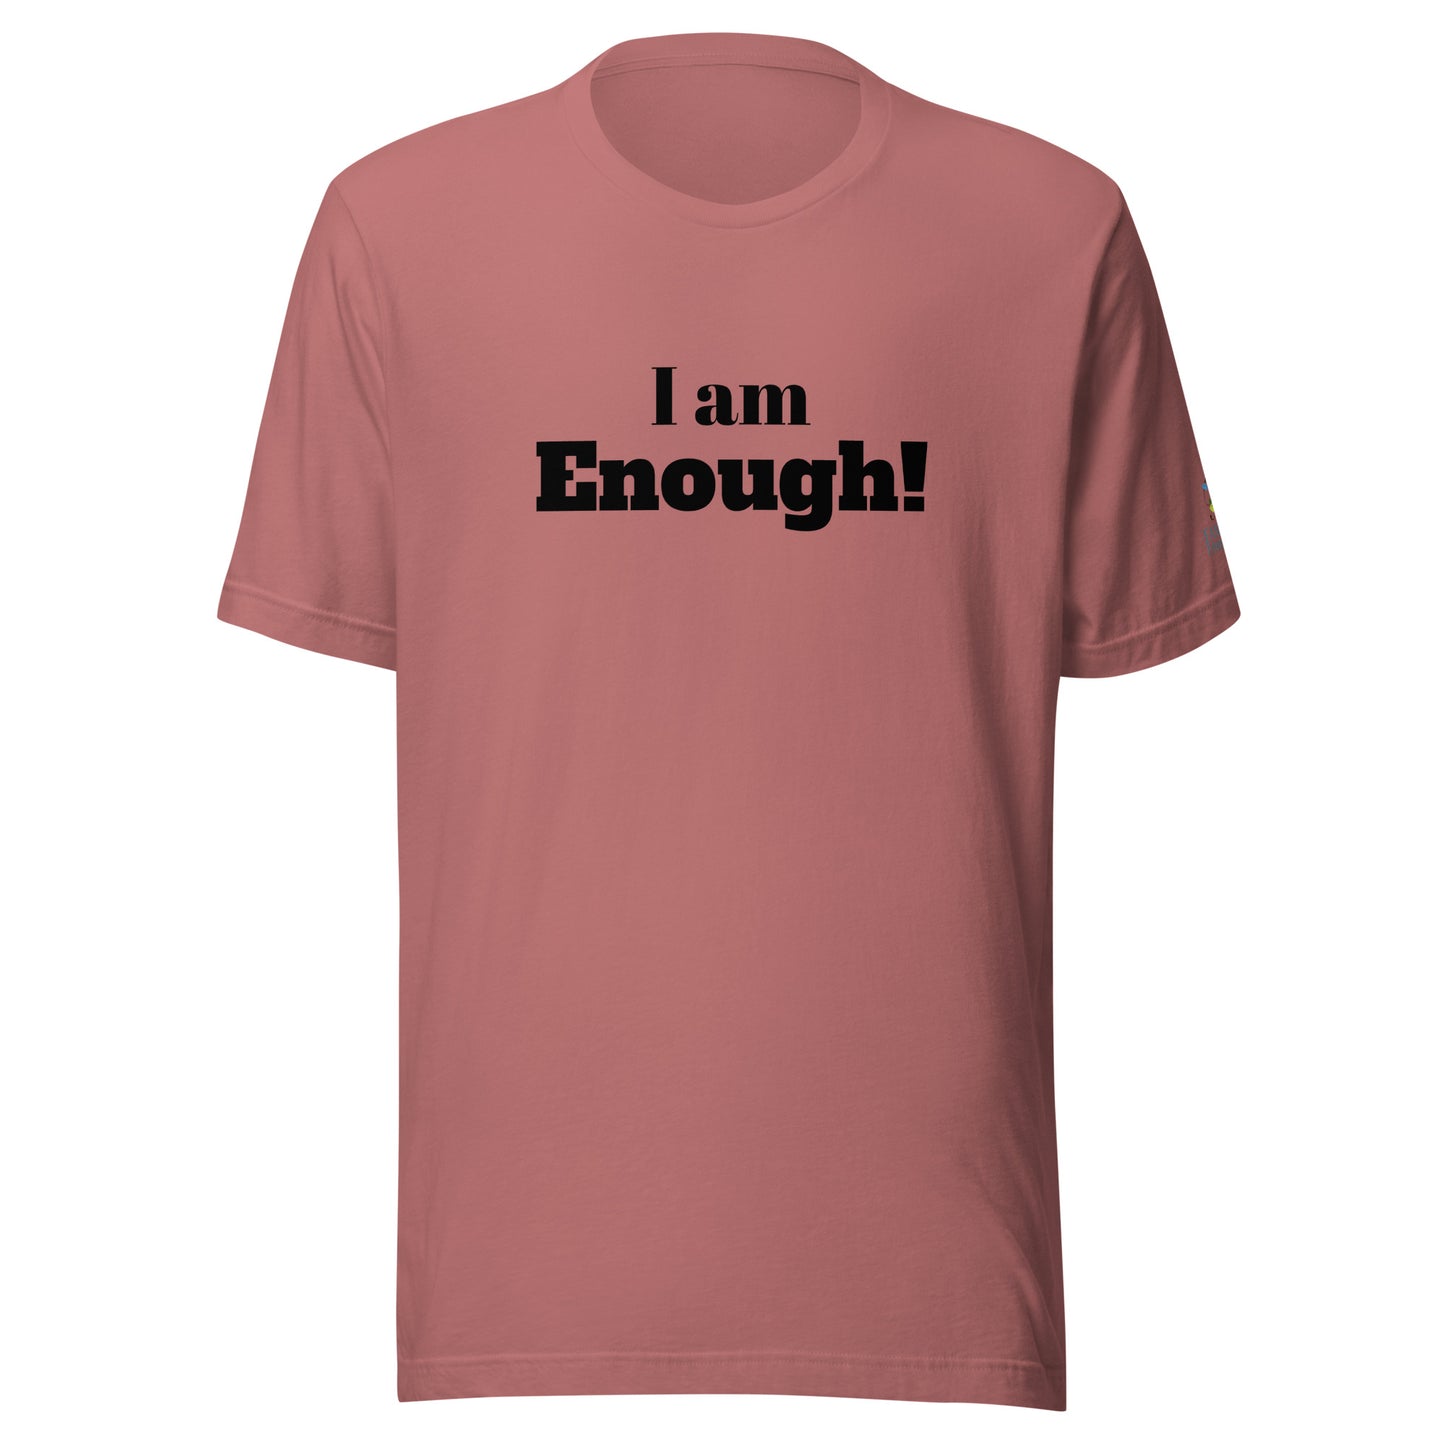 I am Enough! Unisex t-shirt